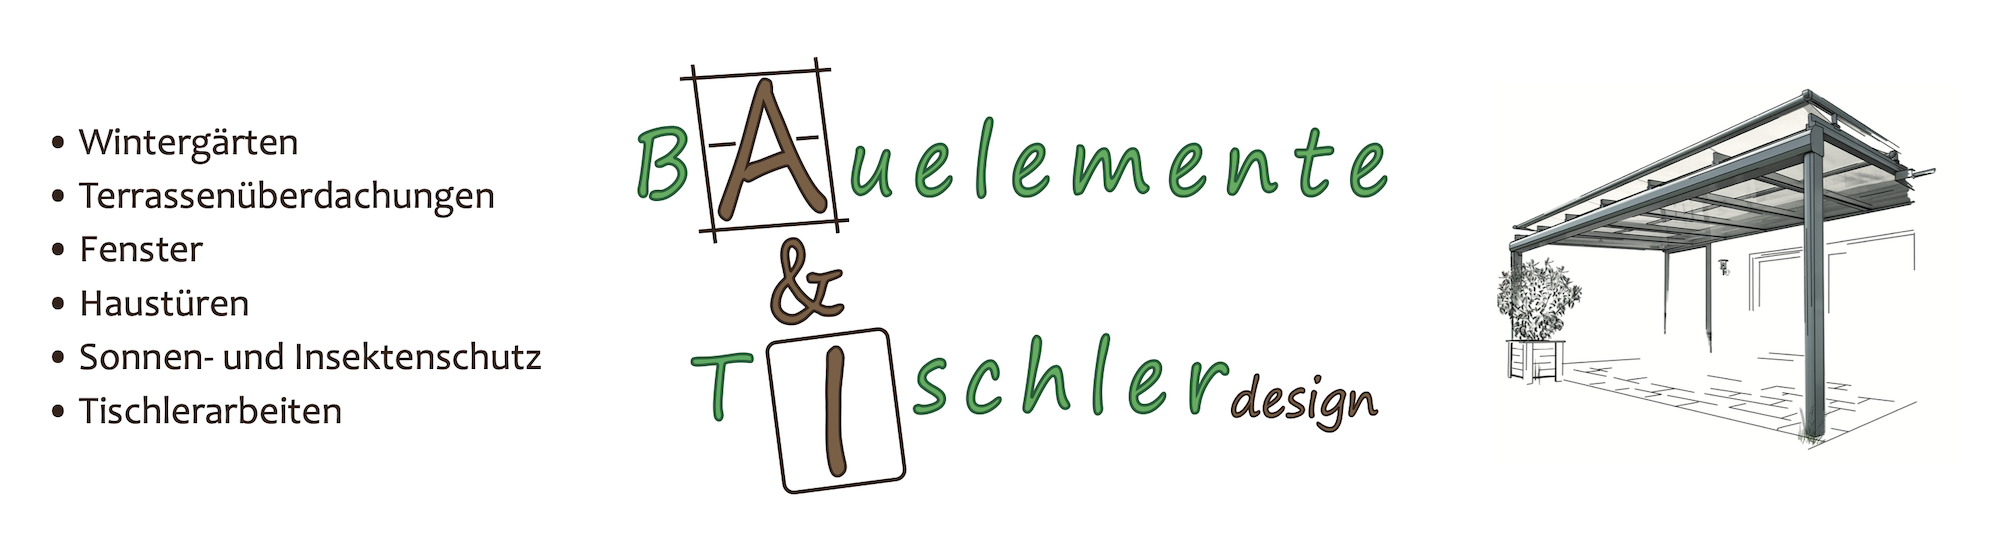 A & I Bauelemente / Tischlerdesign